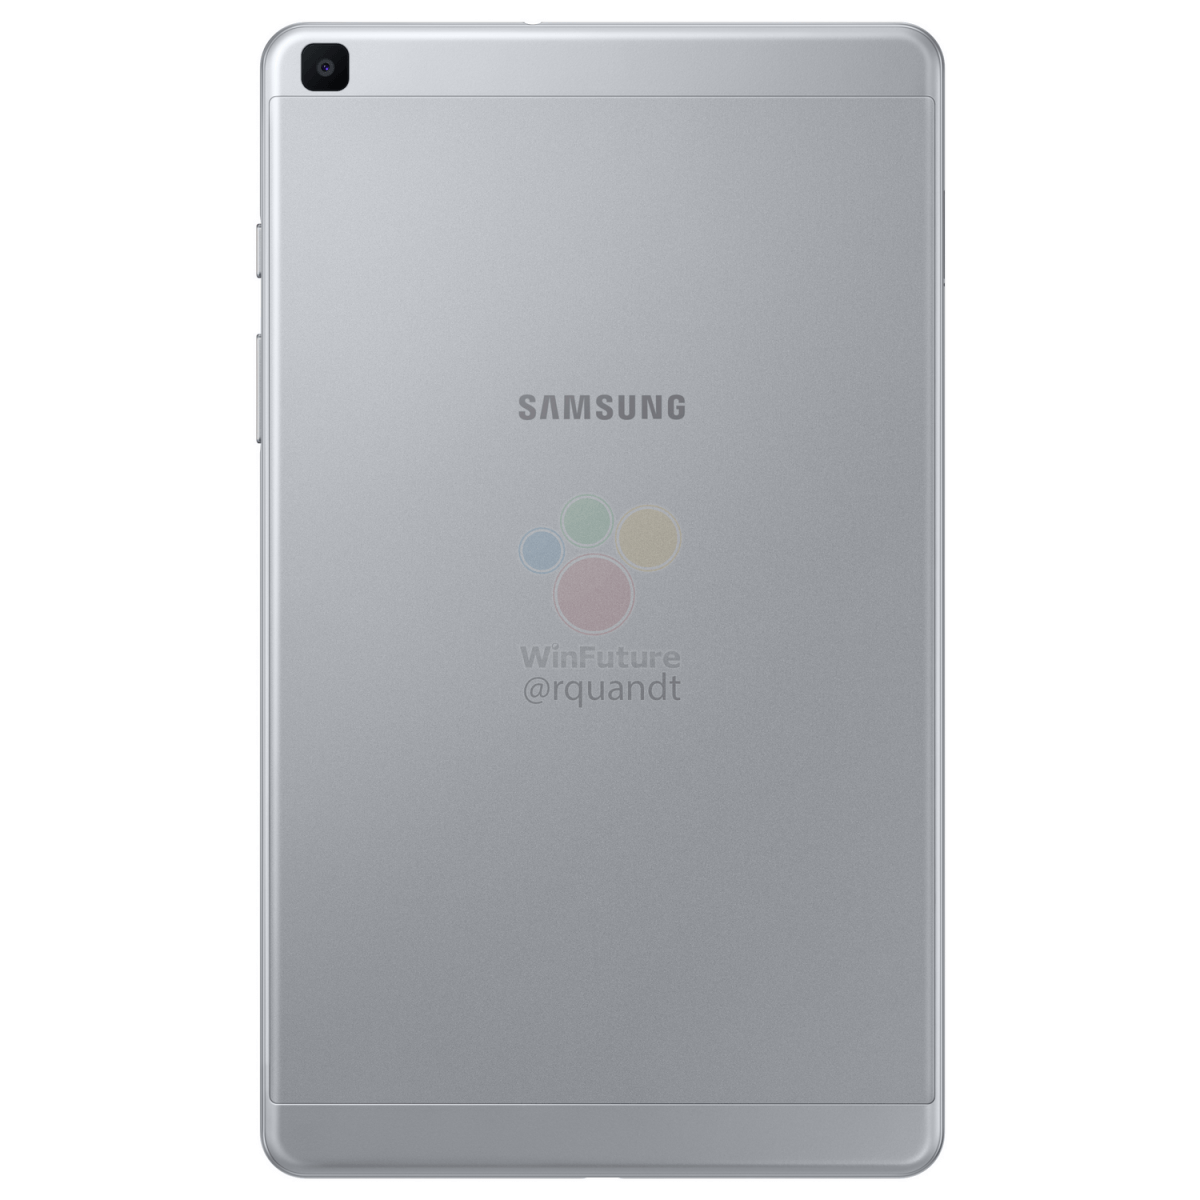 Galaxy Tab A 8” 2019 leaks 4